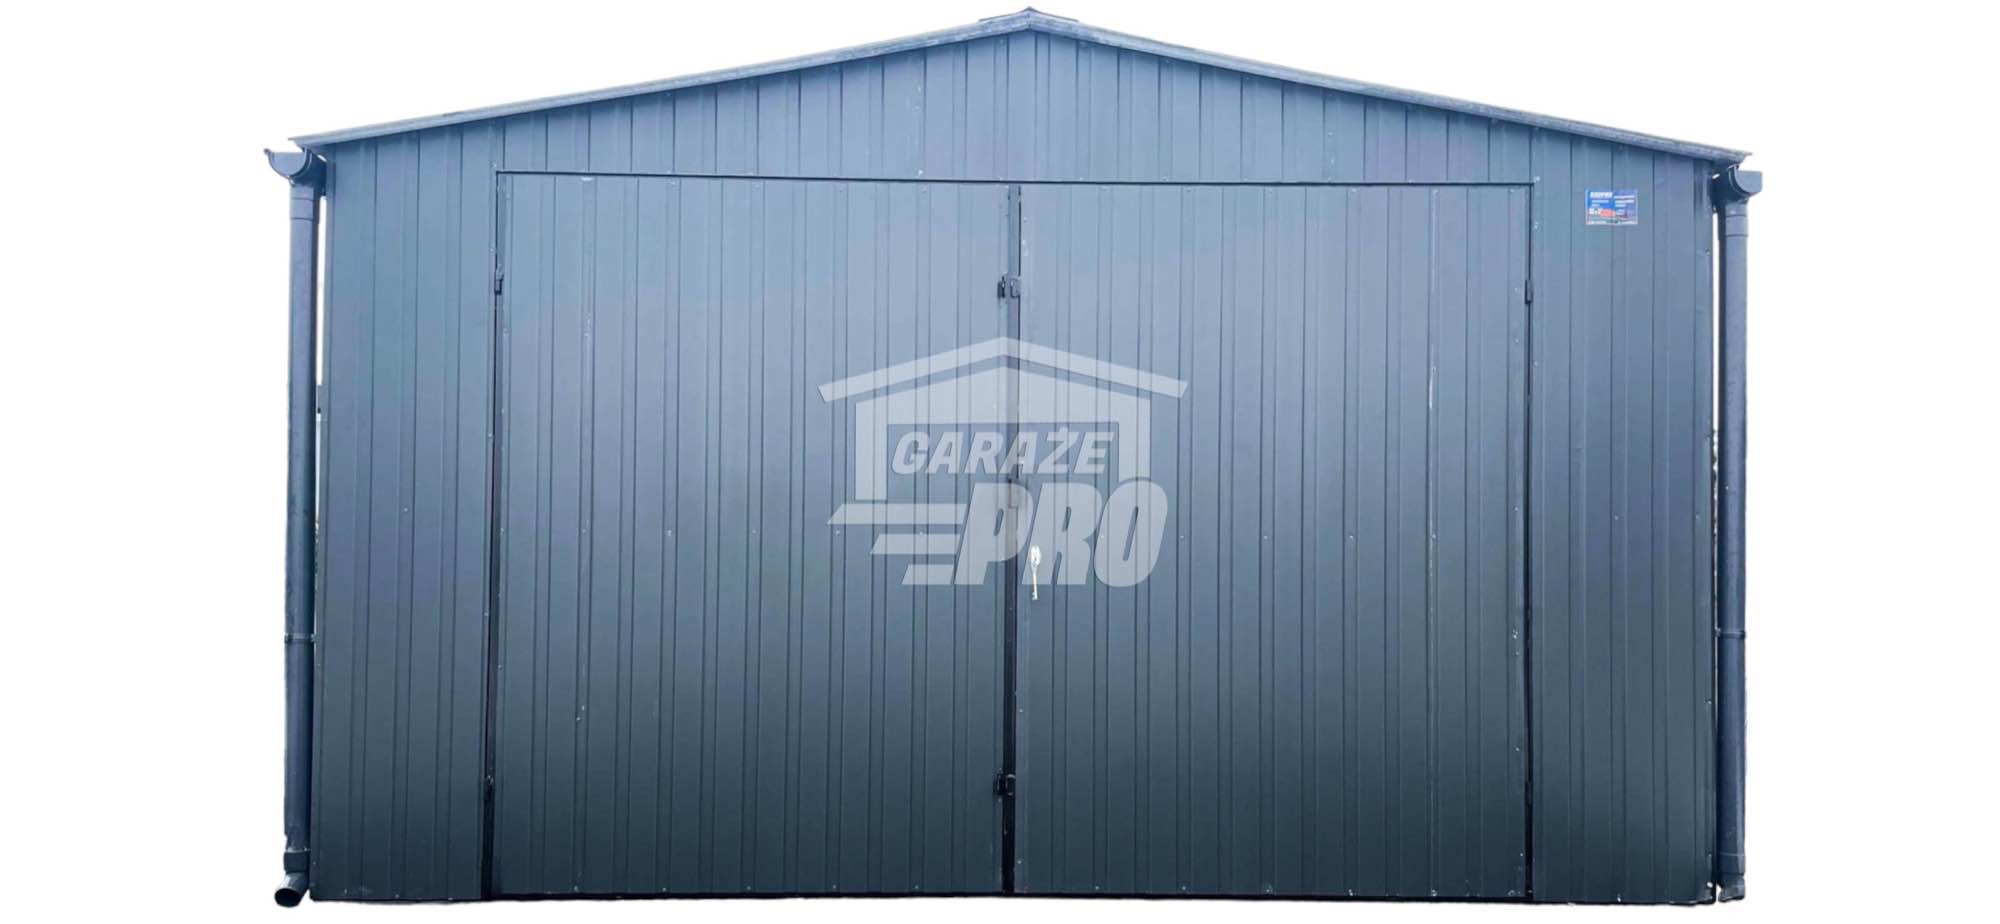 Garaż blaszany 4x5 Brama + okno Antracyt  Dach dwuspadowy GP145 Busko-Zdrój - zdjęcie 1